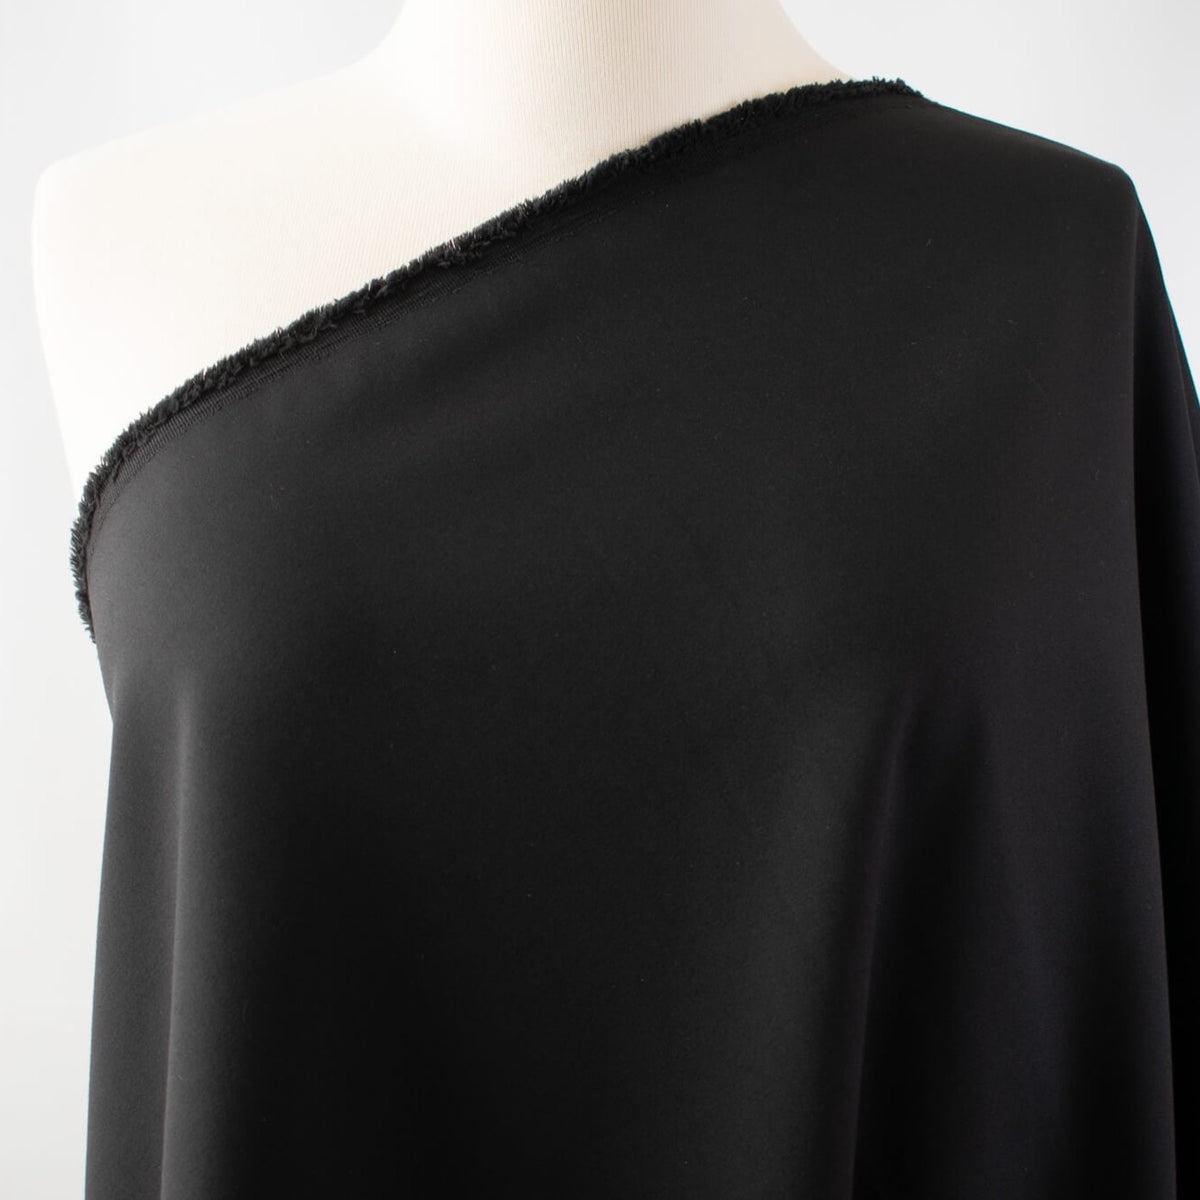 Famous Designer Black Cotton/Poly/Lycra Stretch Suiting 'Raven' – Fancy ...